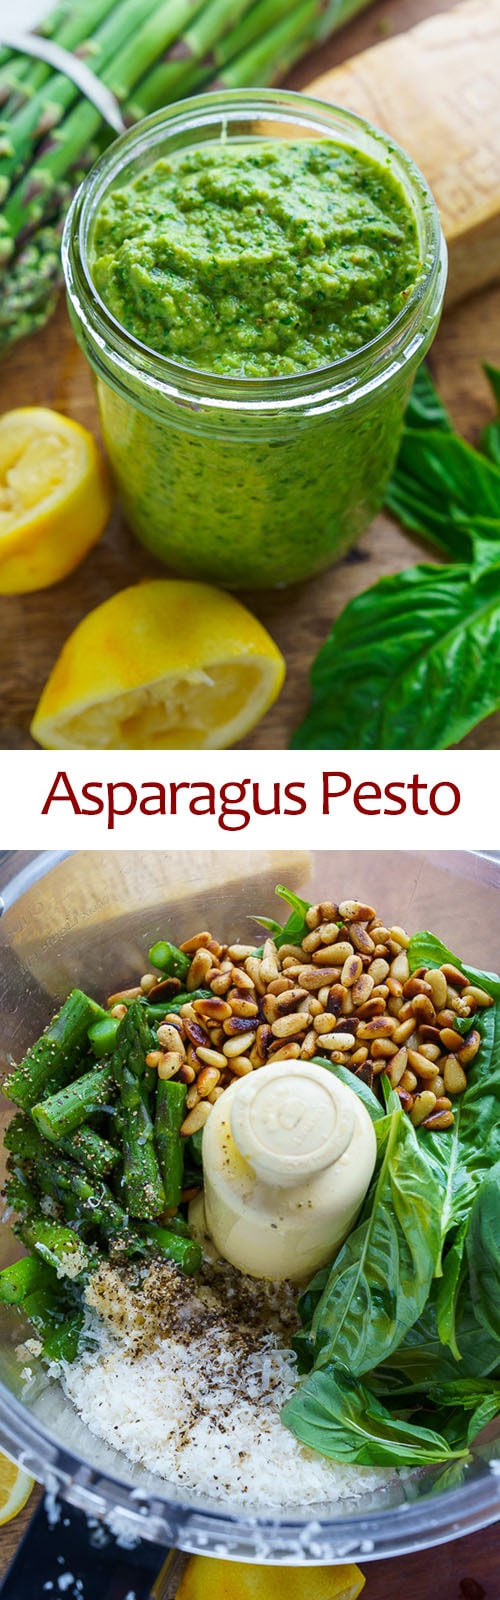 Asparagus Pesto